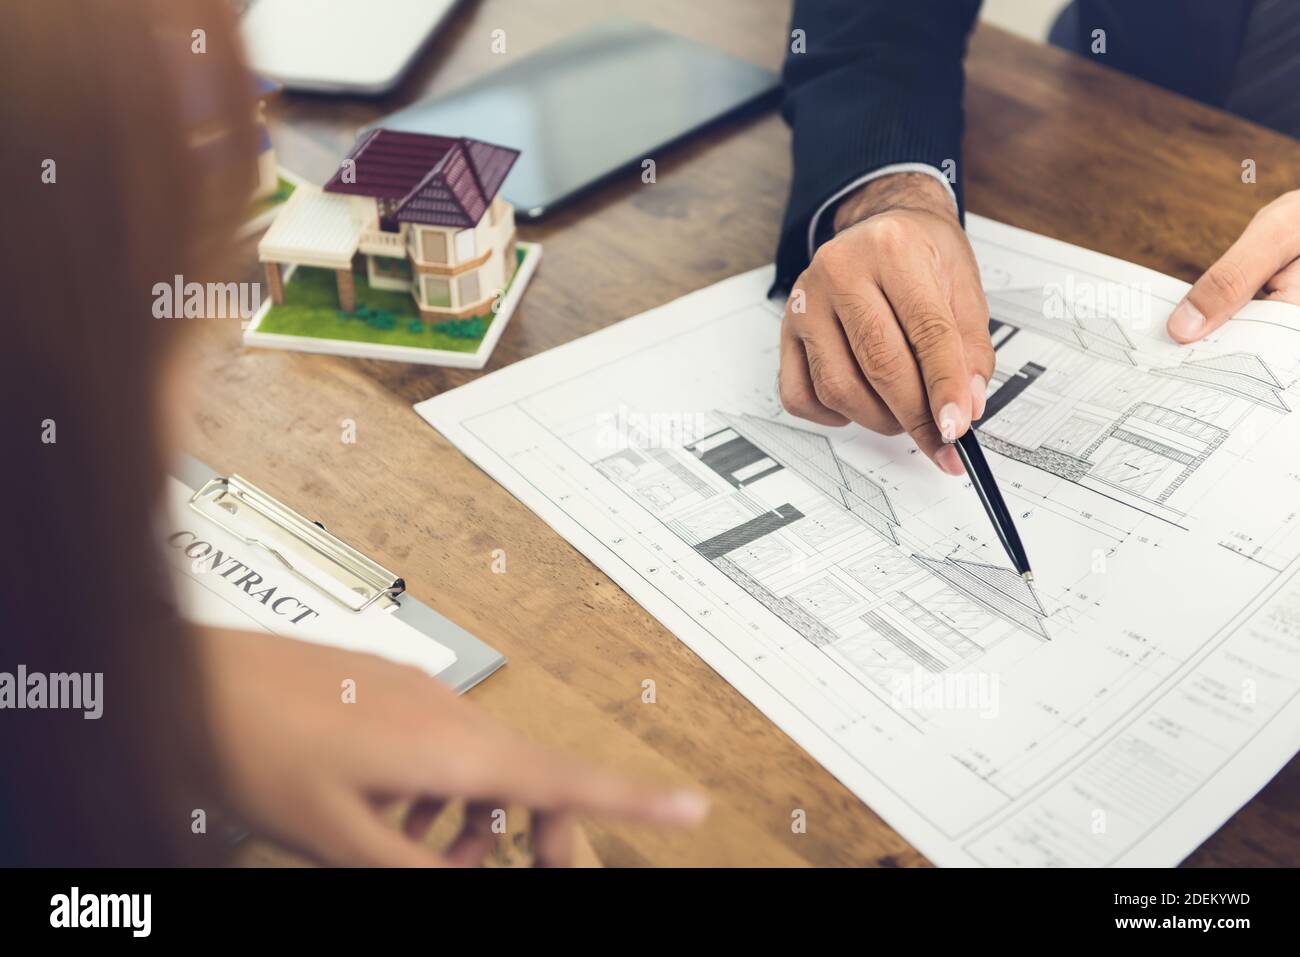 Entwickler hält und erklärt einem Unternehmen ein Wohnkonzept Frau Klientin für Immobilienentwicklung Zwecke mit einem Vertrag Vertragsvorschlag Stockfoto